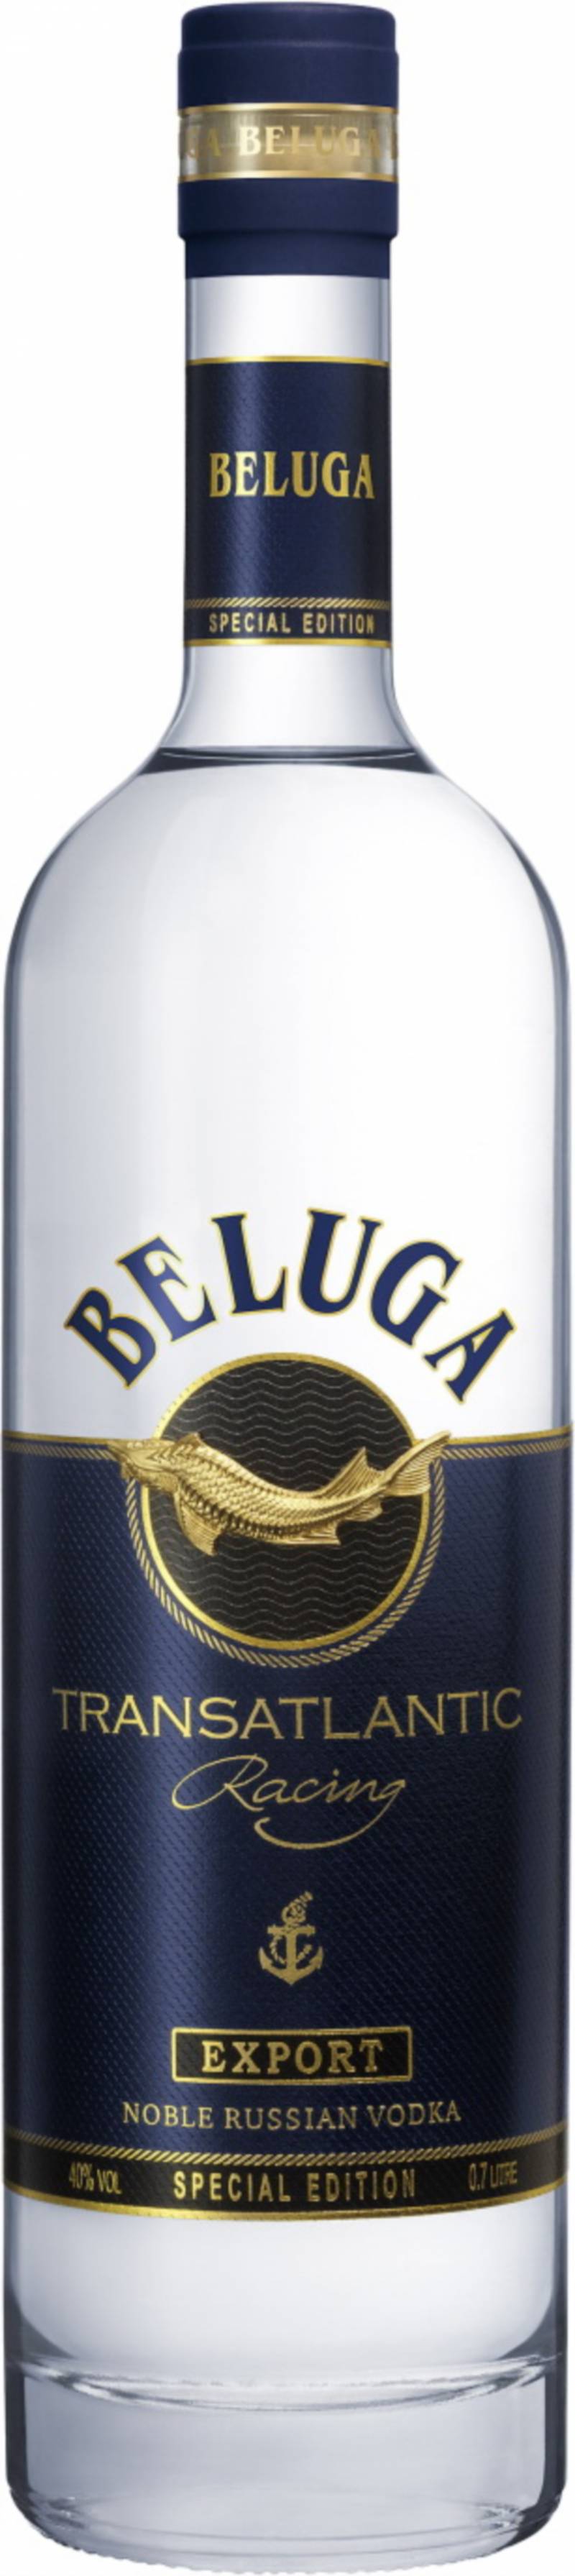 Водка Белуга Трансатлантик Рейсинг 0,7 л. &quot; Vodka Beluga Transatlantic Racing &quot;